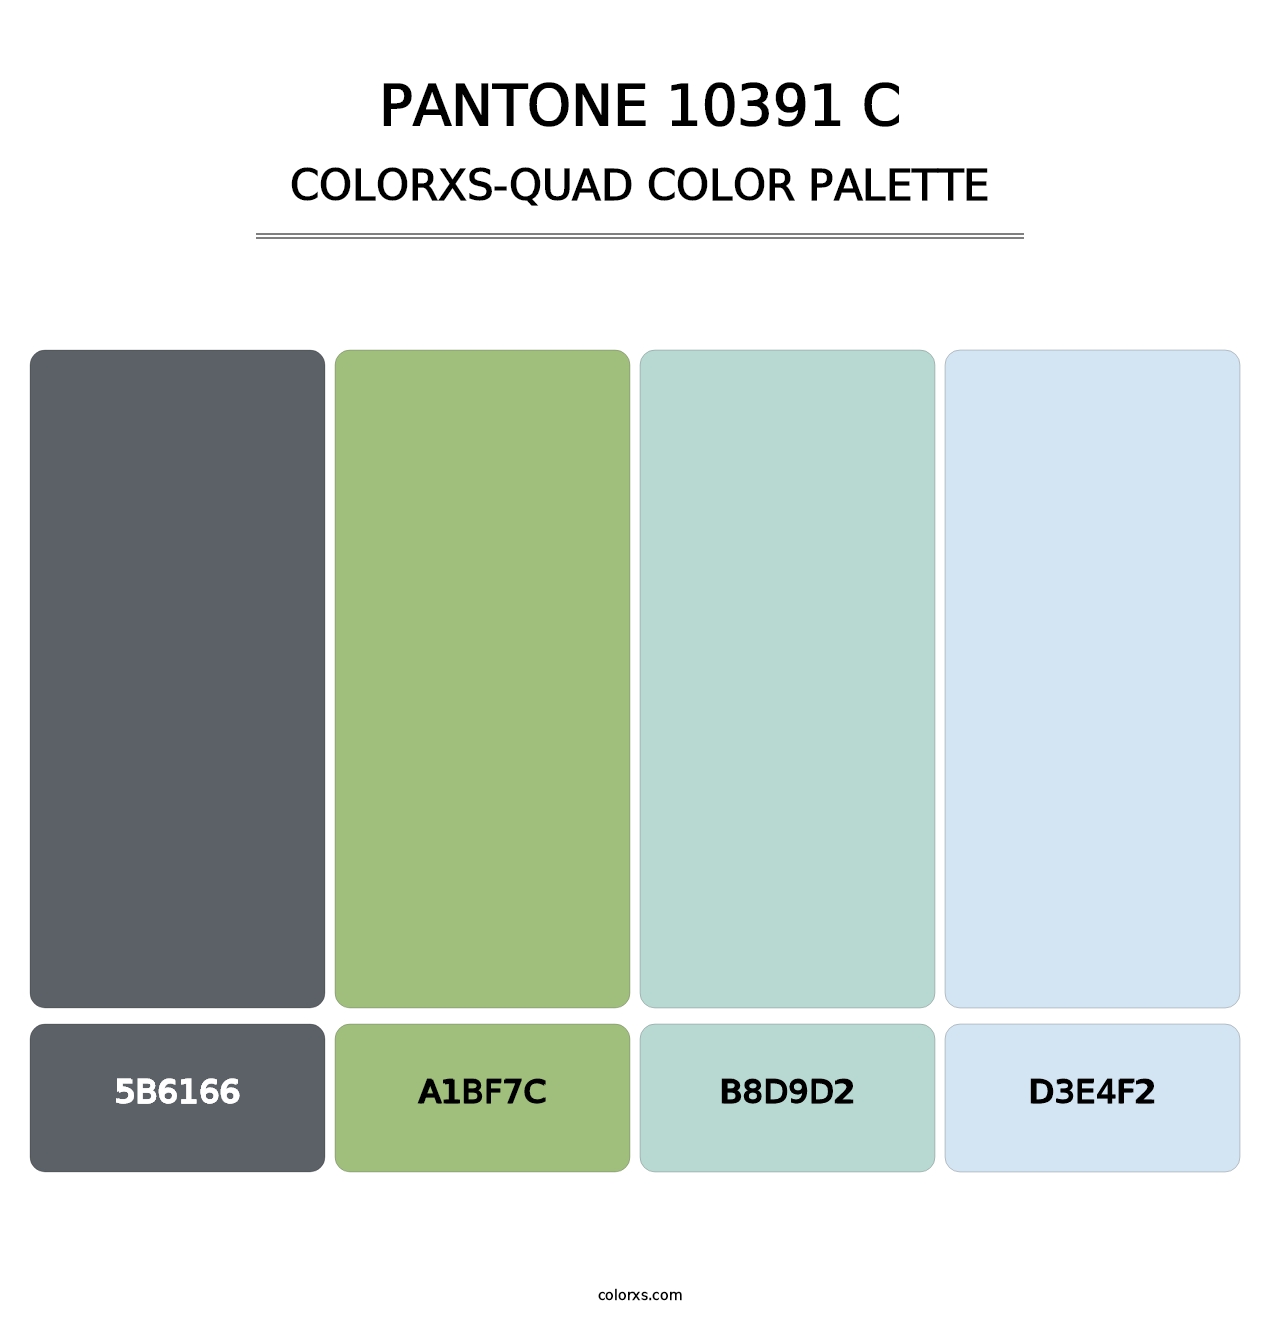 PANTONE 10391 C - Colorxs Quad Palette